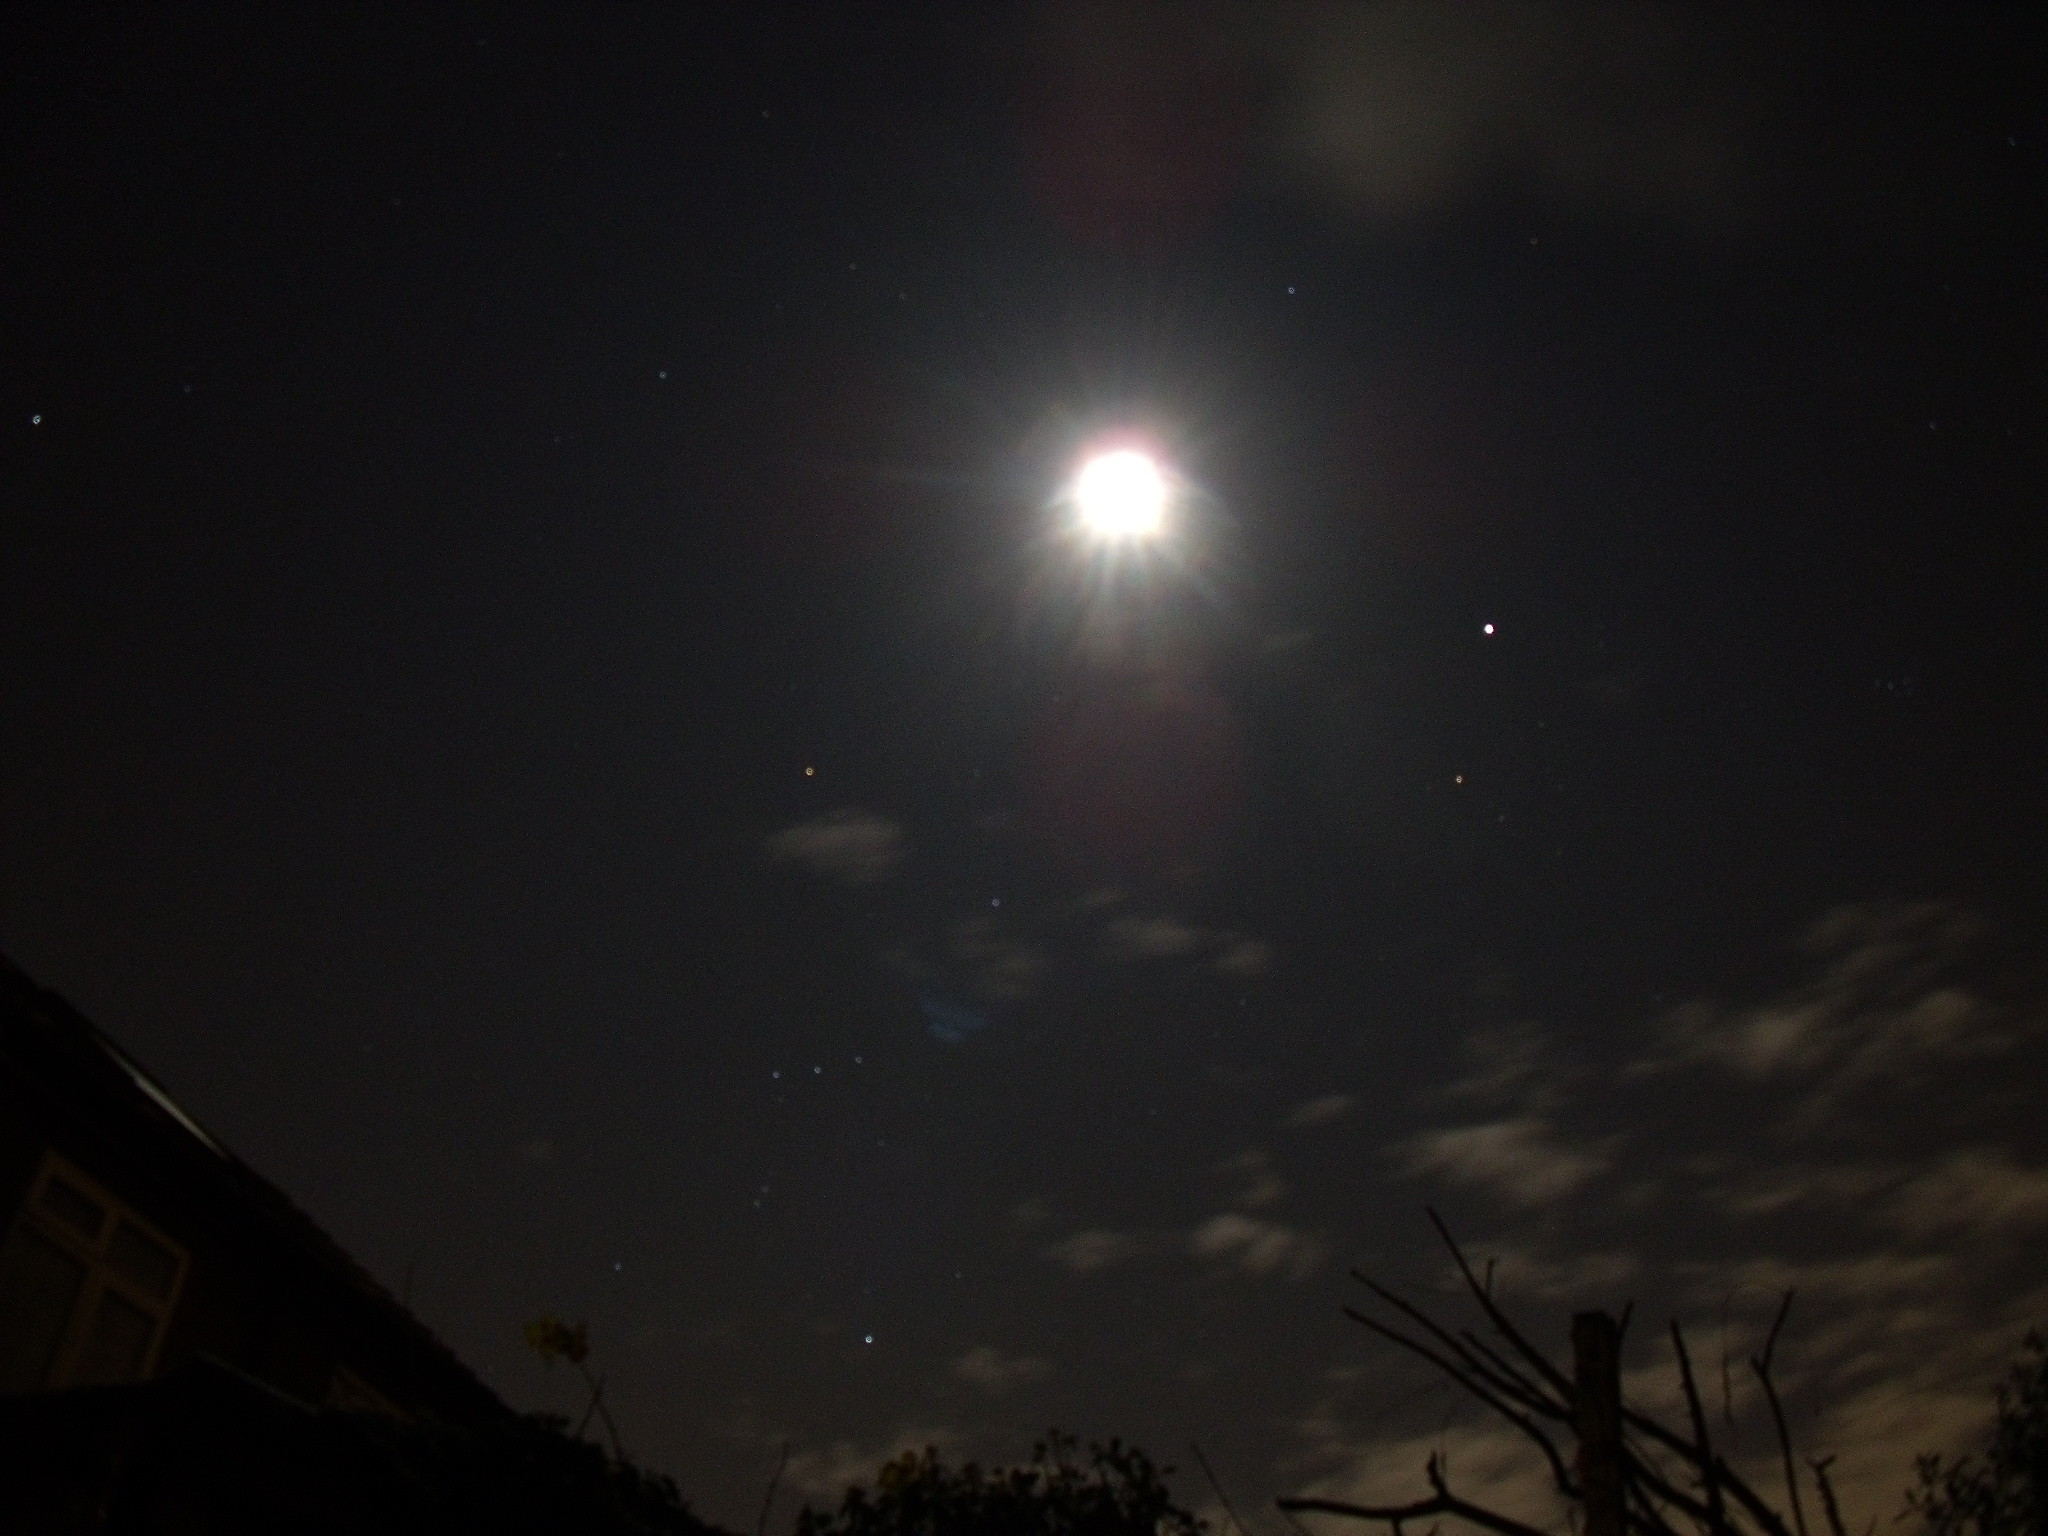 2048x1536 Photo of post-Full Moon, Jupiter & Orion's Belt